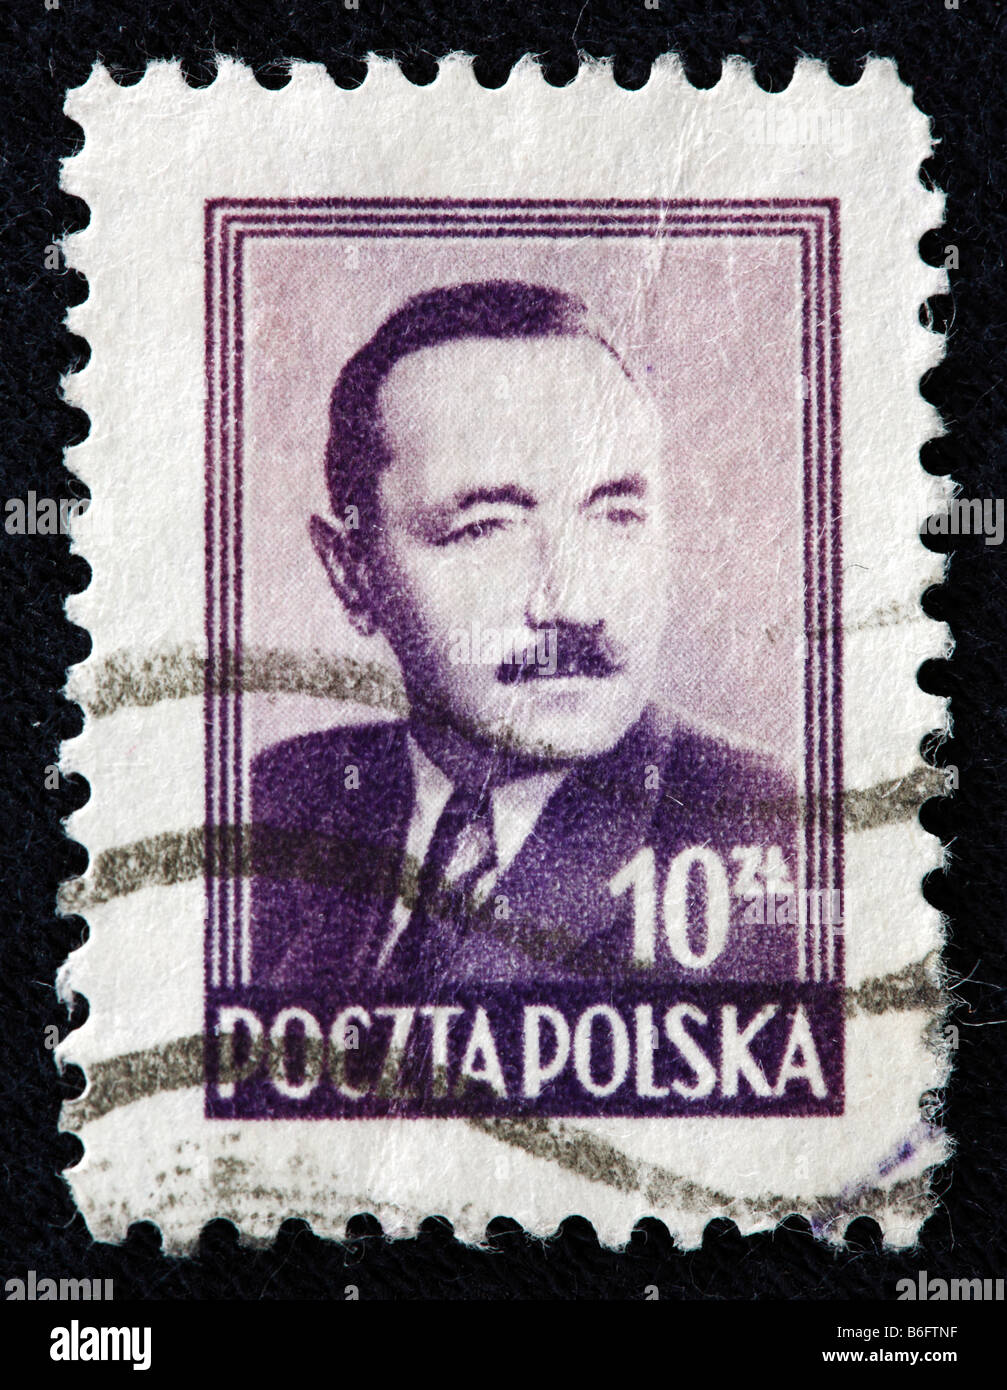 Boleslav Bierut, Président de la Pologne (1947-1952), timbre-poste, Pologne Banque D'Images